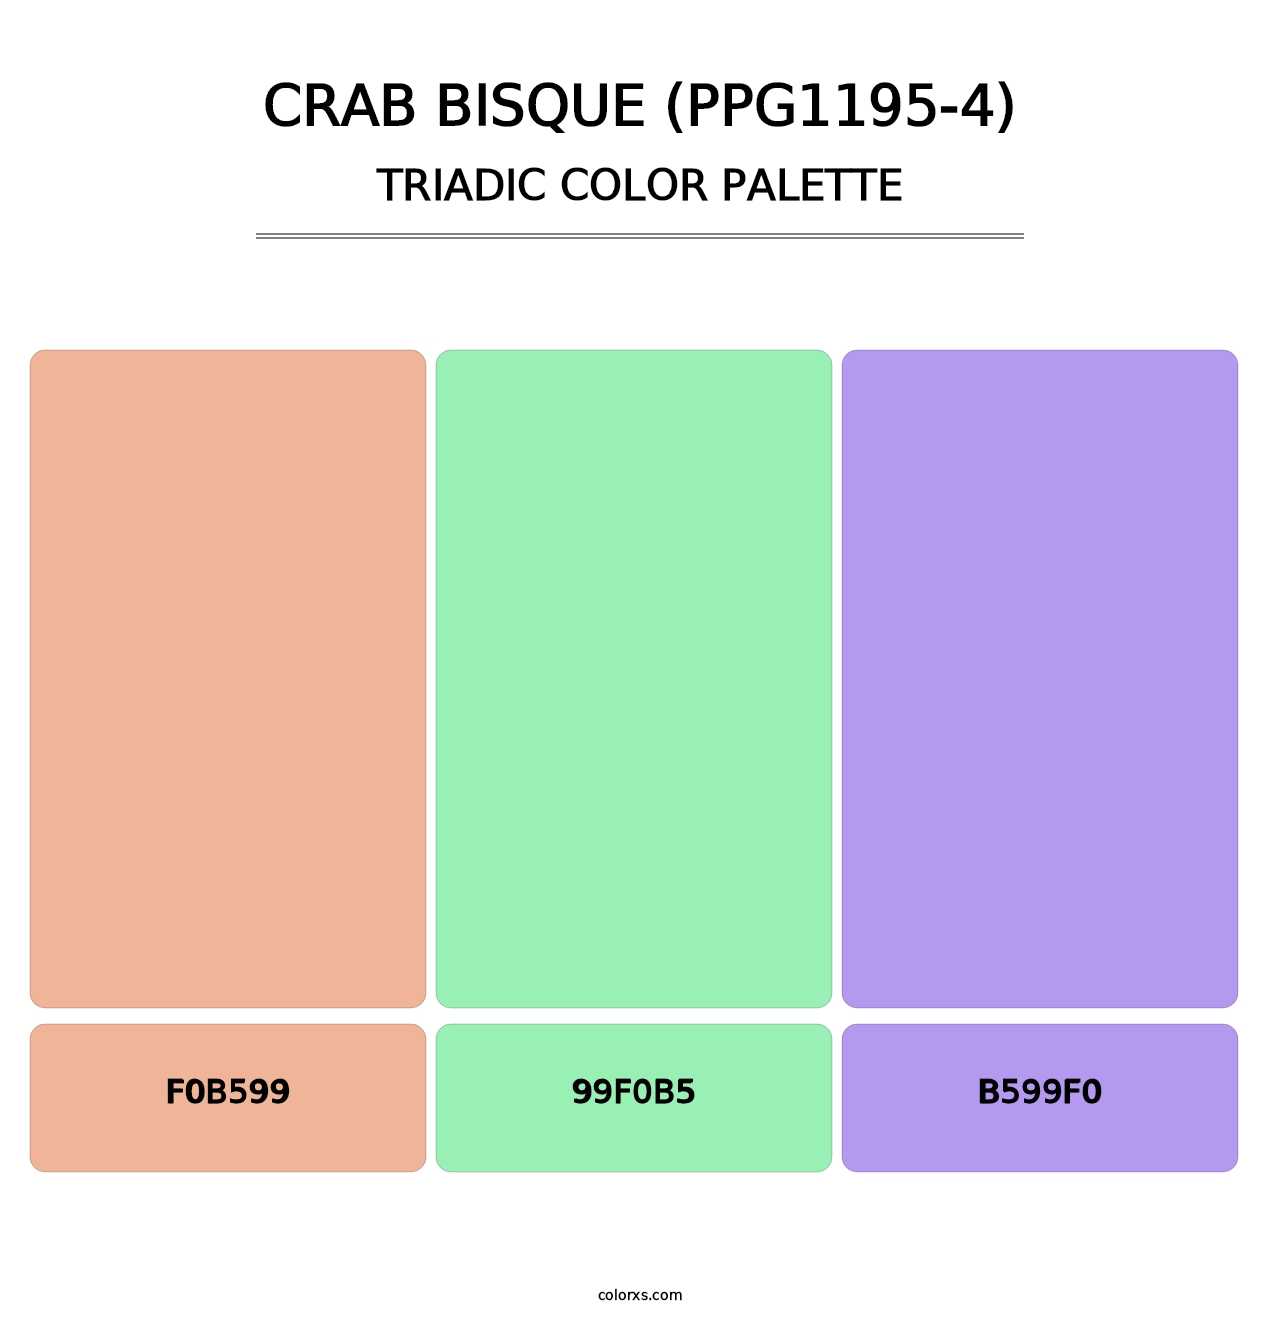 Crab Bisque (PPG1195-4) - Triadic Color Palette